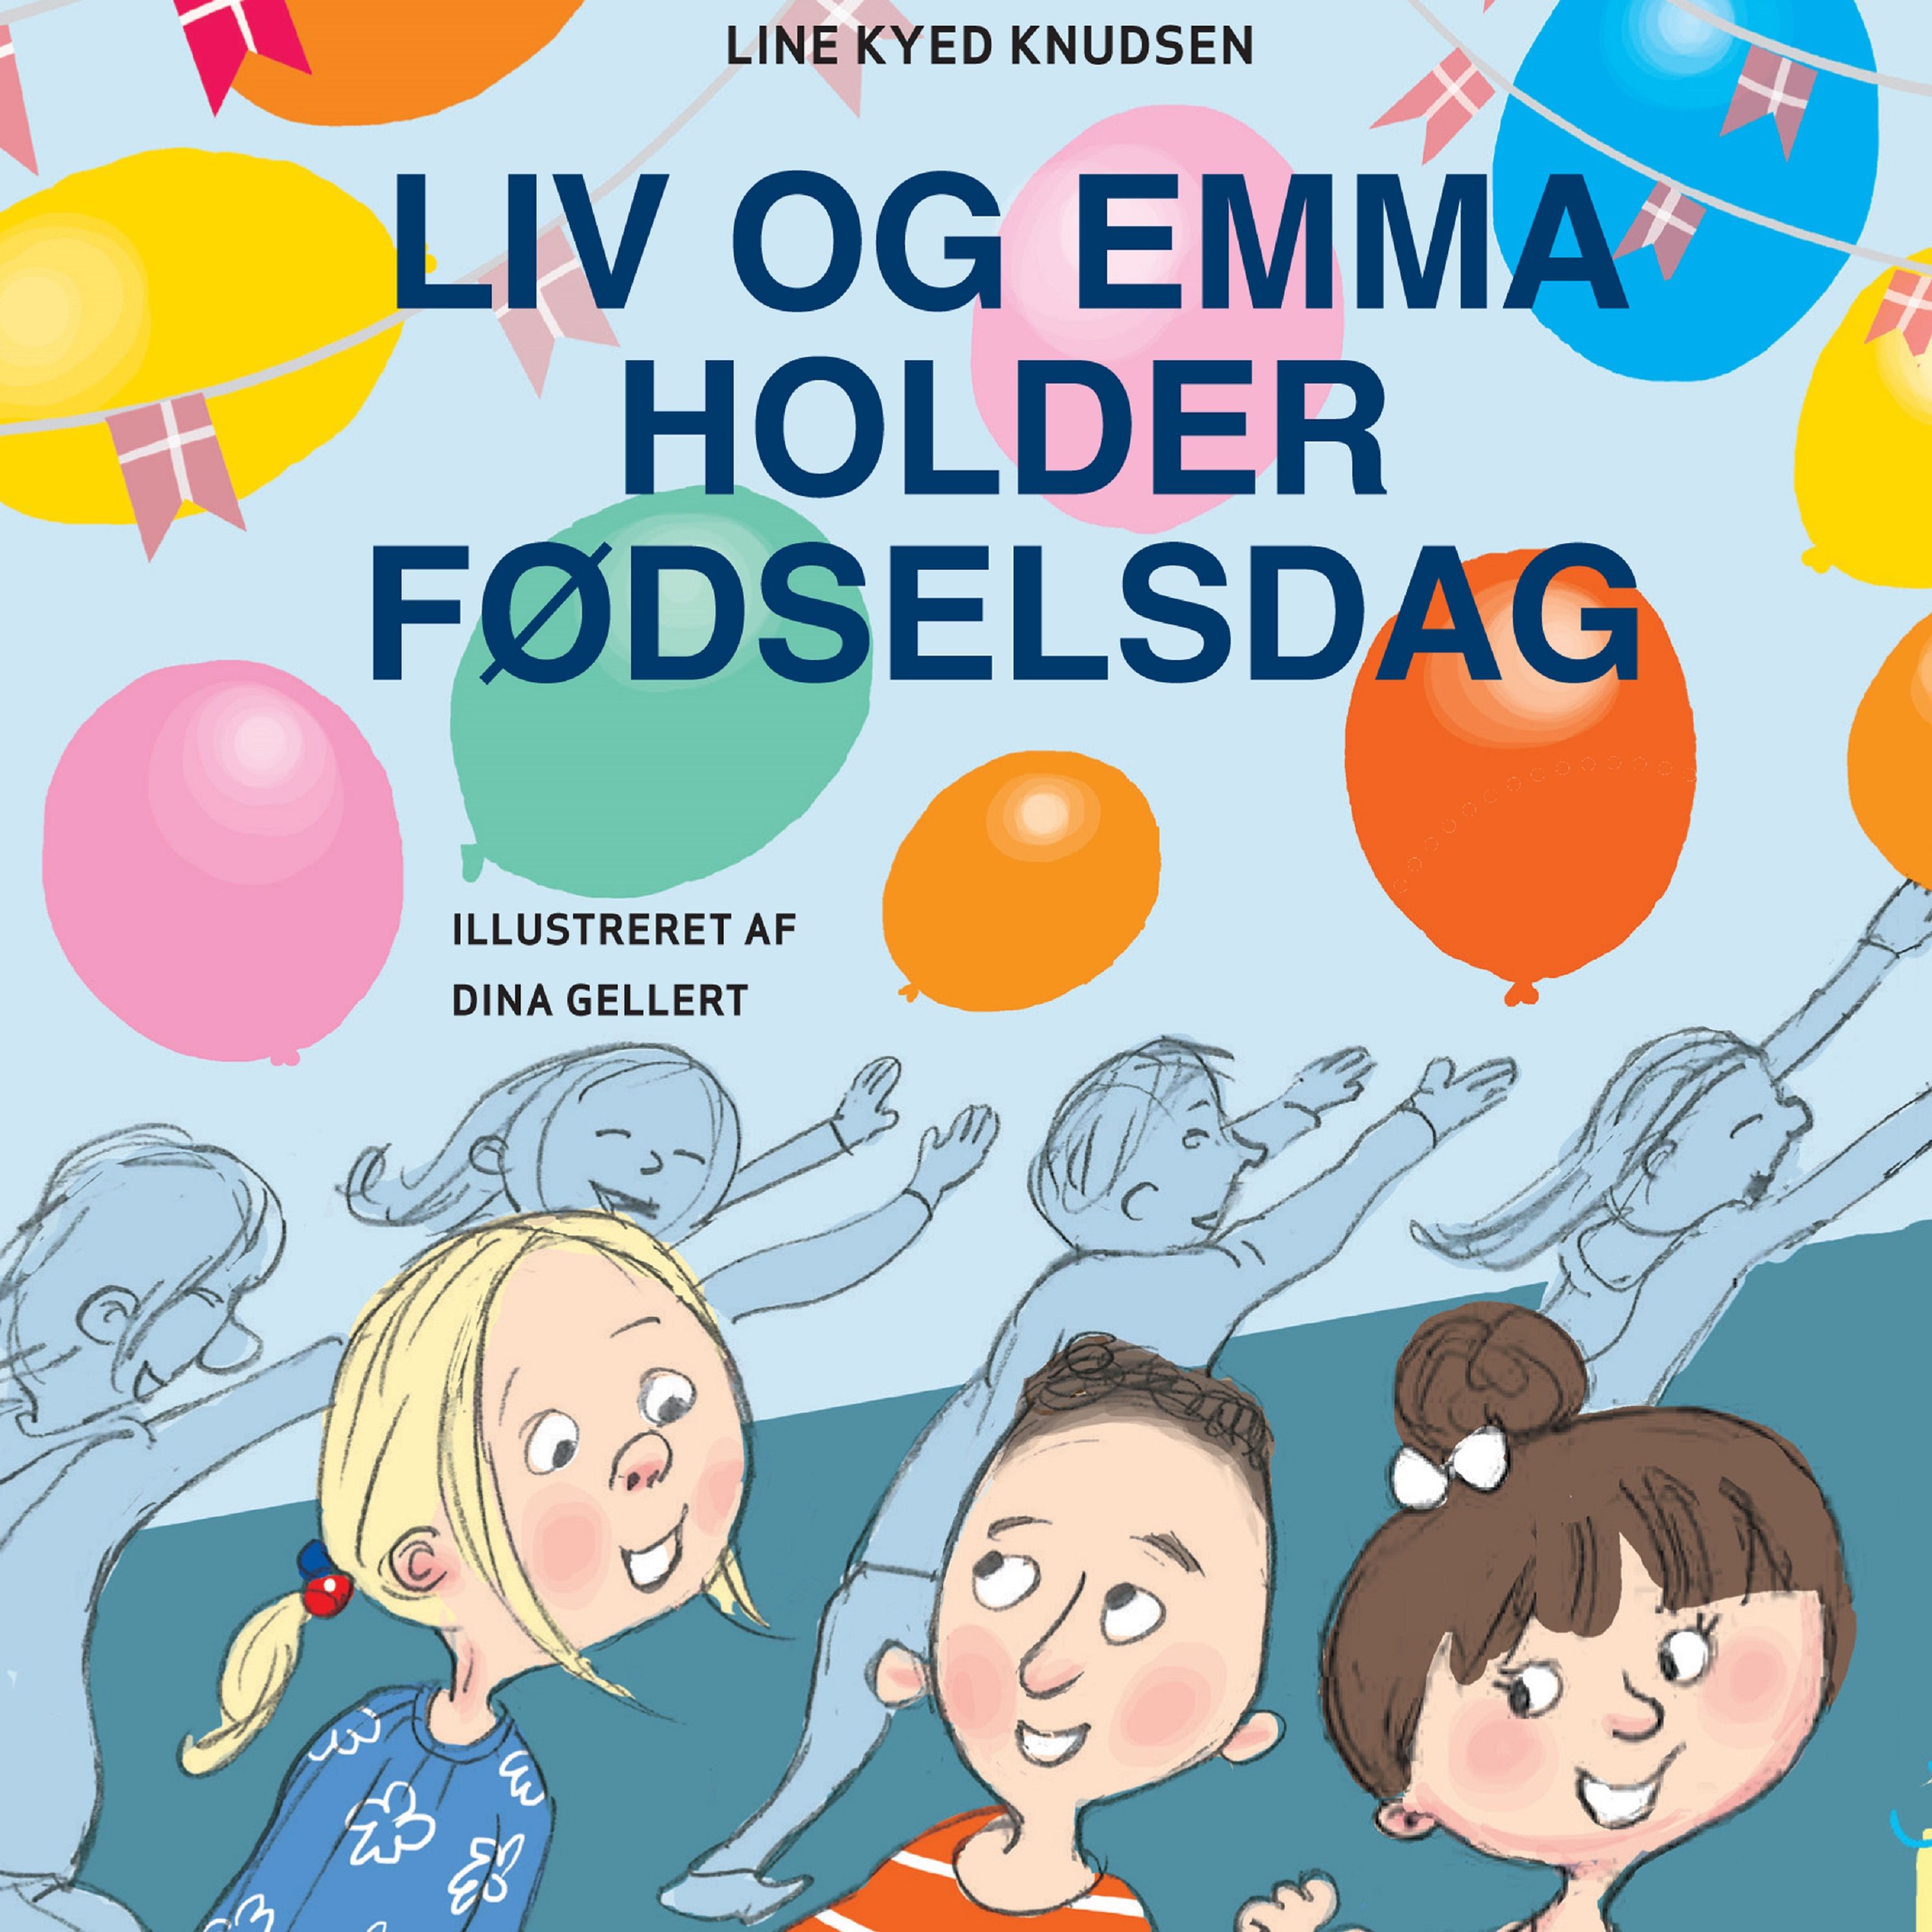 Liv og Emma holder fødselsdag, audiobook by Line Kyed Knudsen